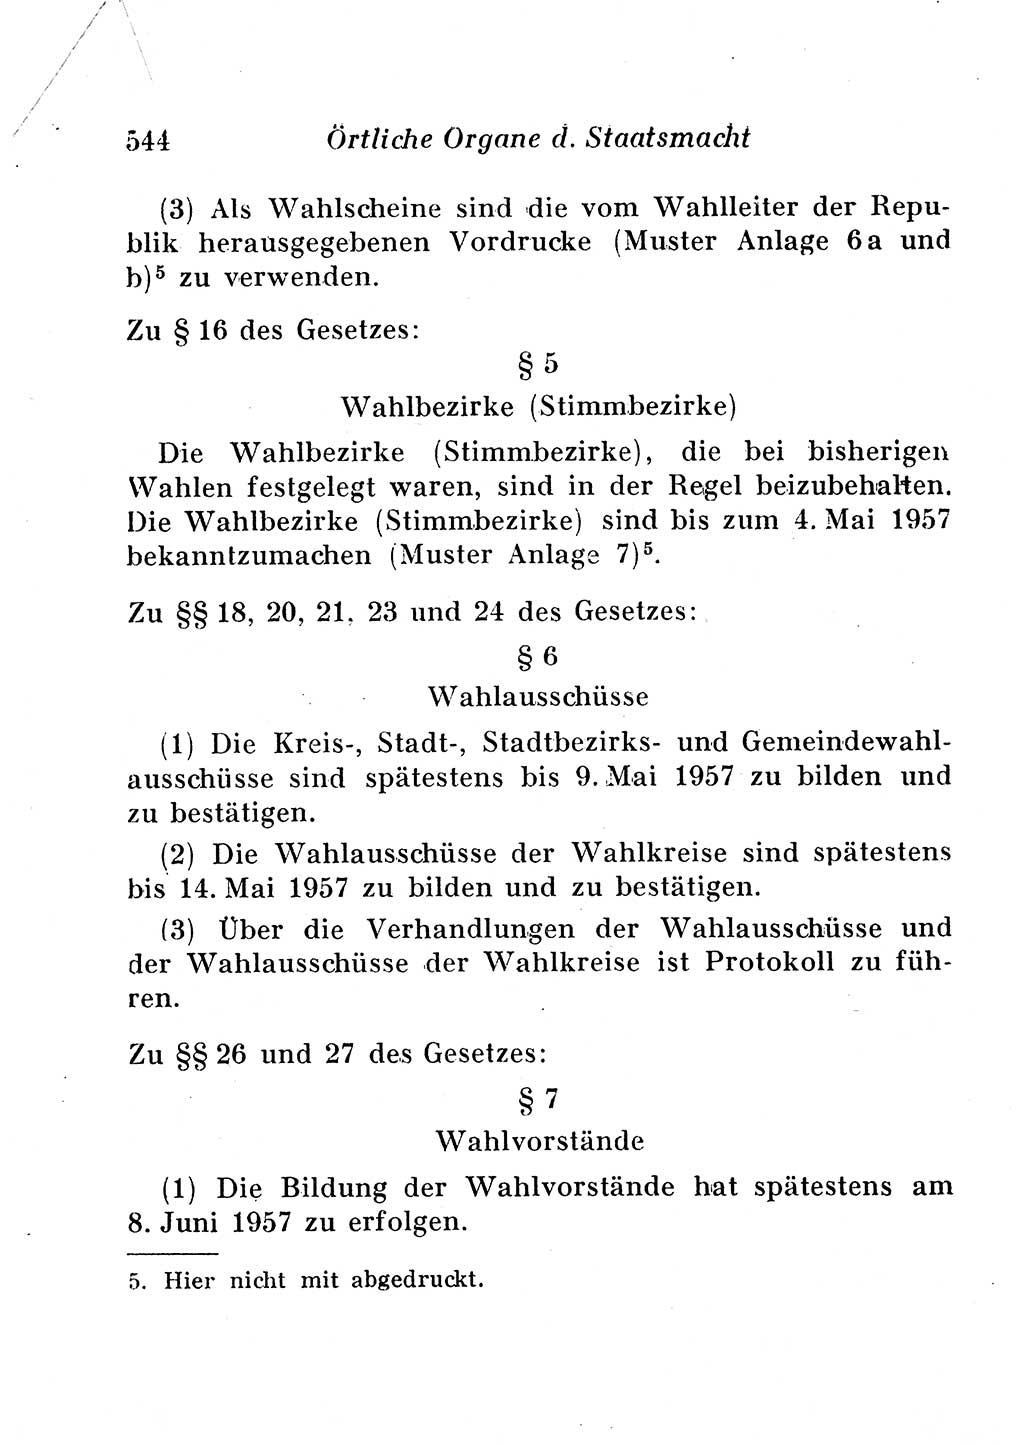 Staats- und verwaltungsrechtliche Gesetze der Deutschen Demokratischen Republik (DDR) 1958, Seite 544 (StVerwR Ges. DDR 1958, S. 544)